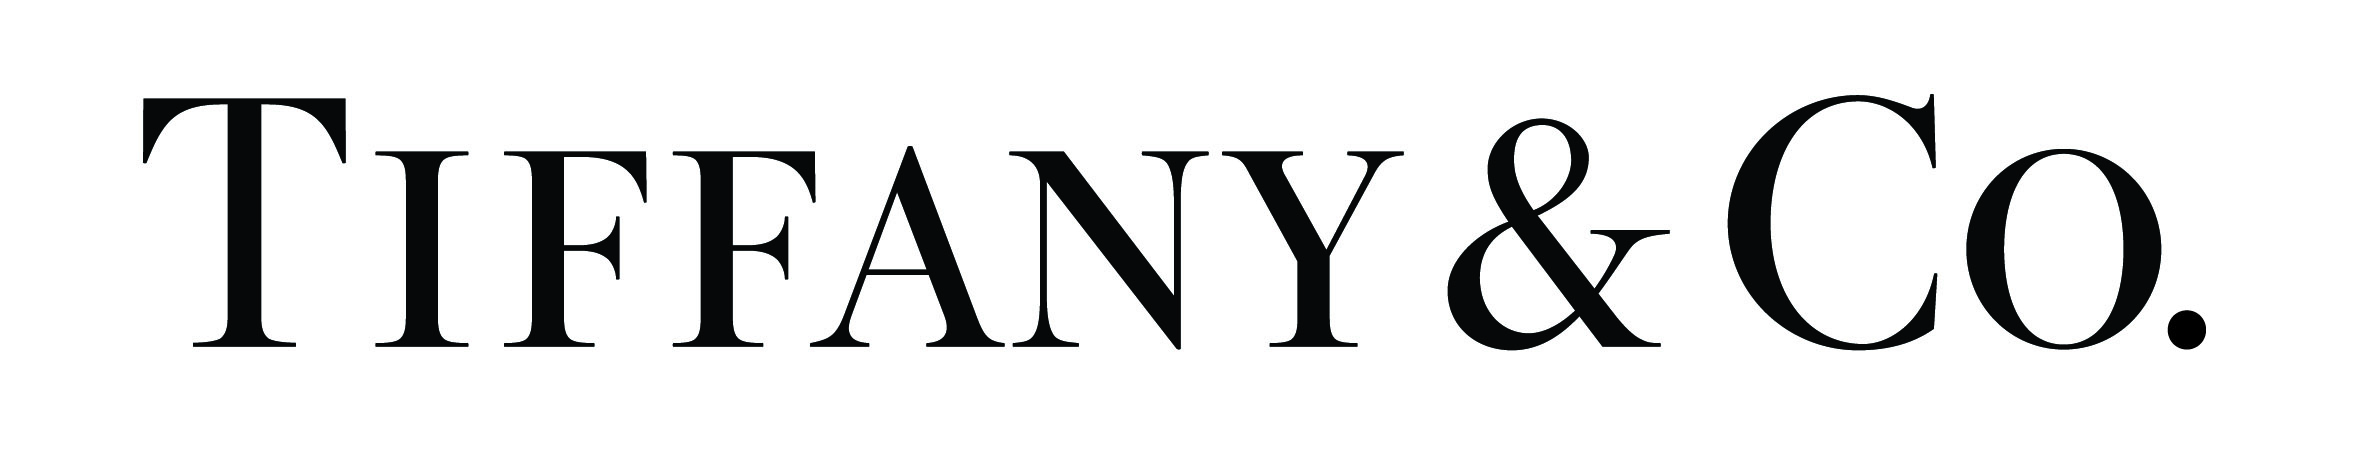 Tiffany & Co Logo